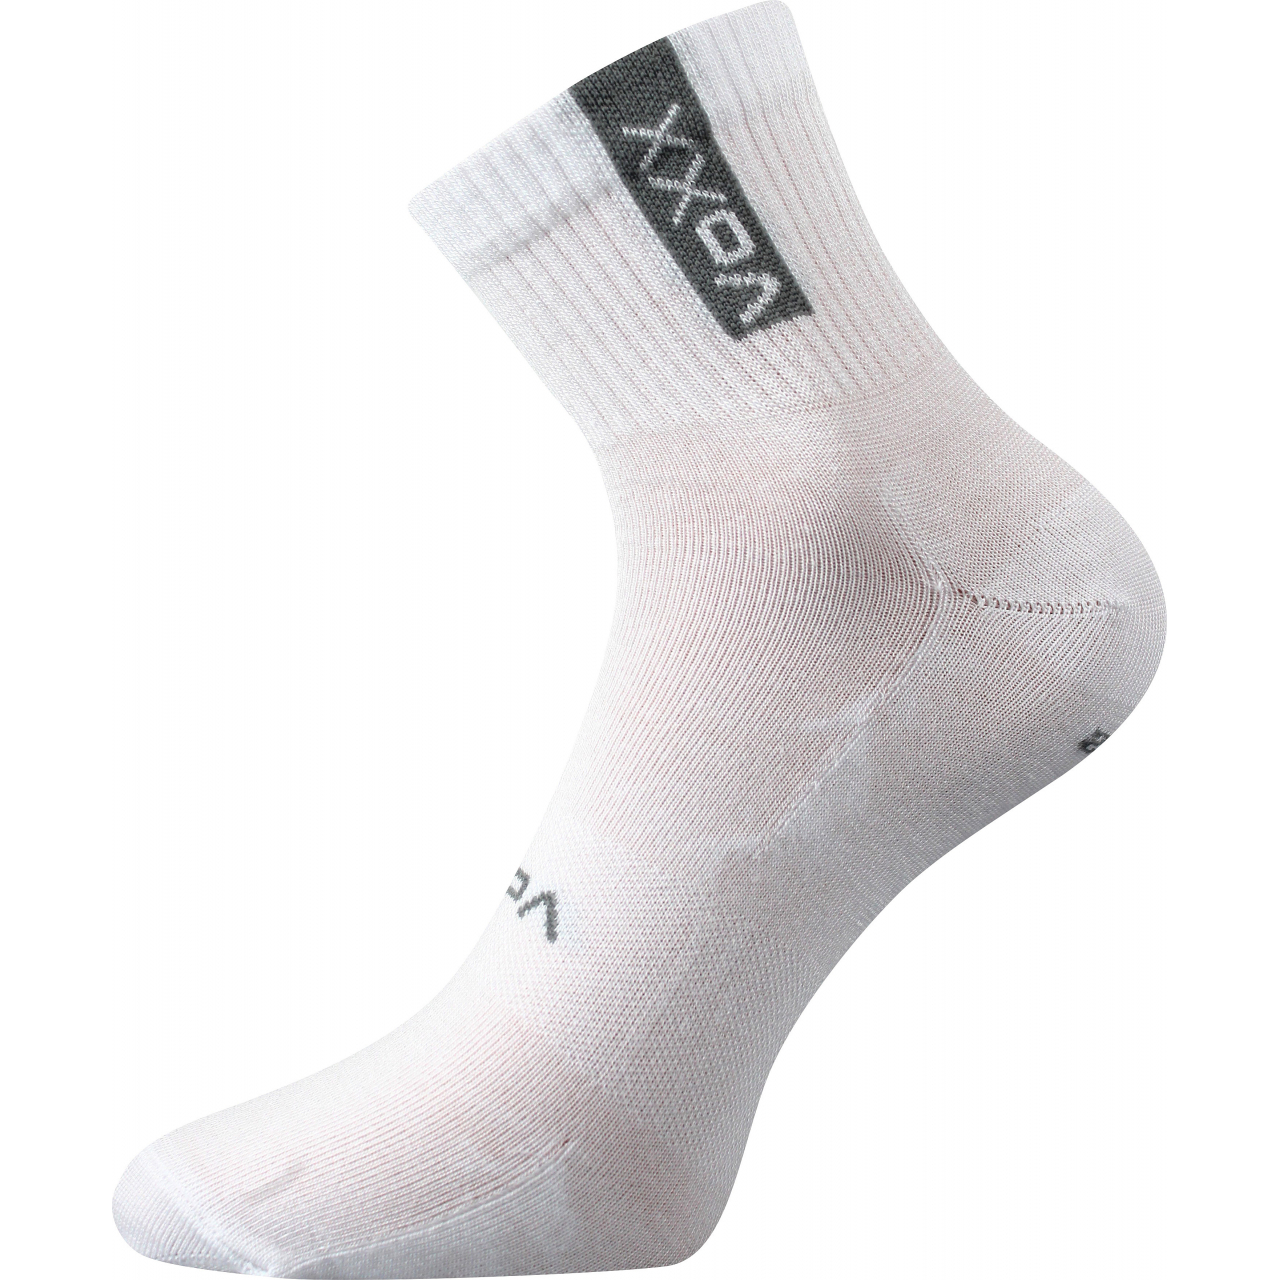 Ponožky sportovní unisex Voxx Brox - bílé, 39-42